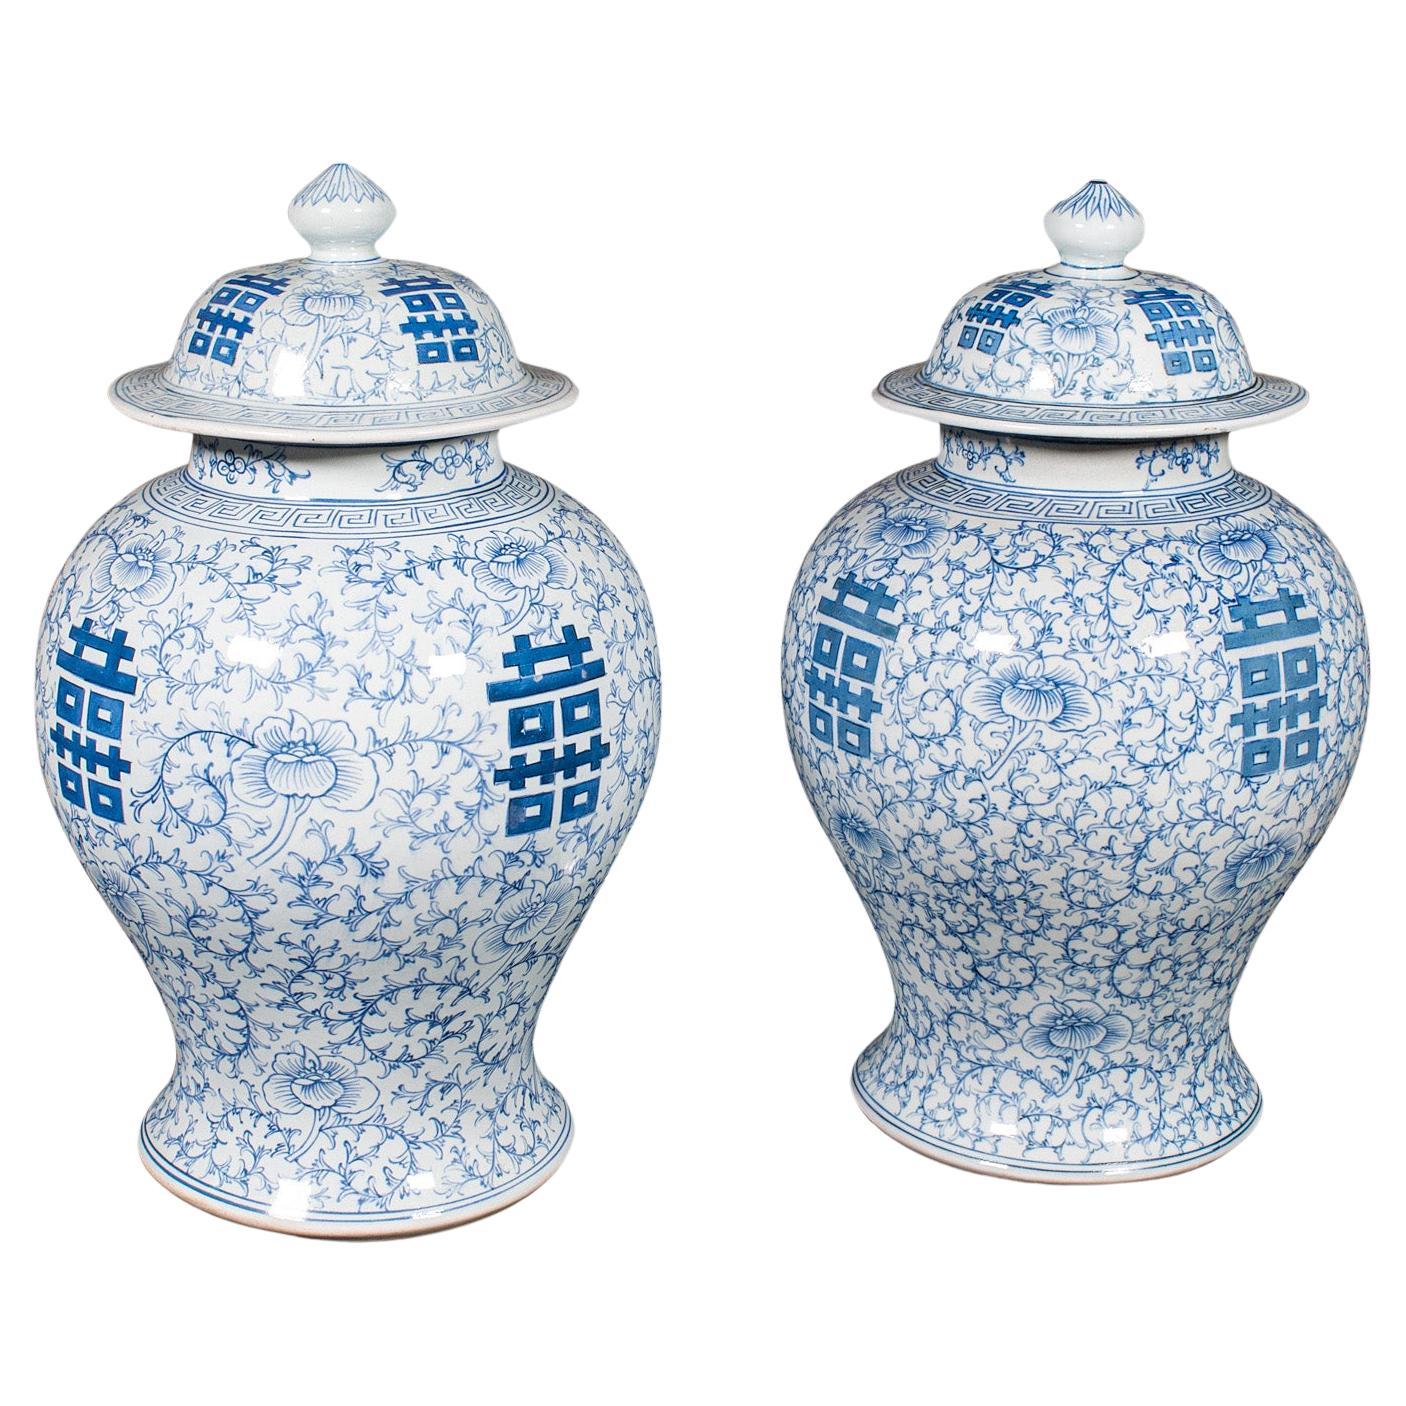 Pair Of Vintage Decorative Vases, Chinese, Ceramic, Flower Urn, Art Deco, C.1940